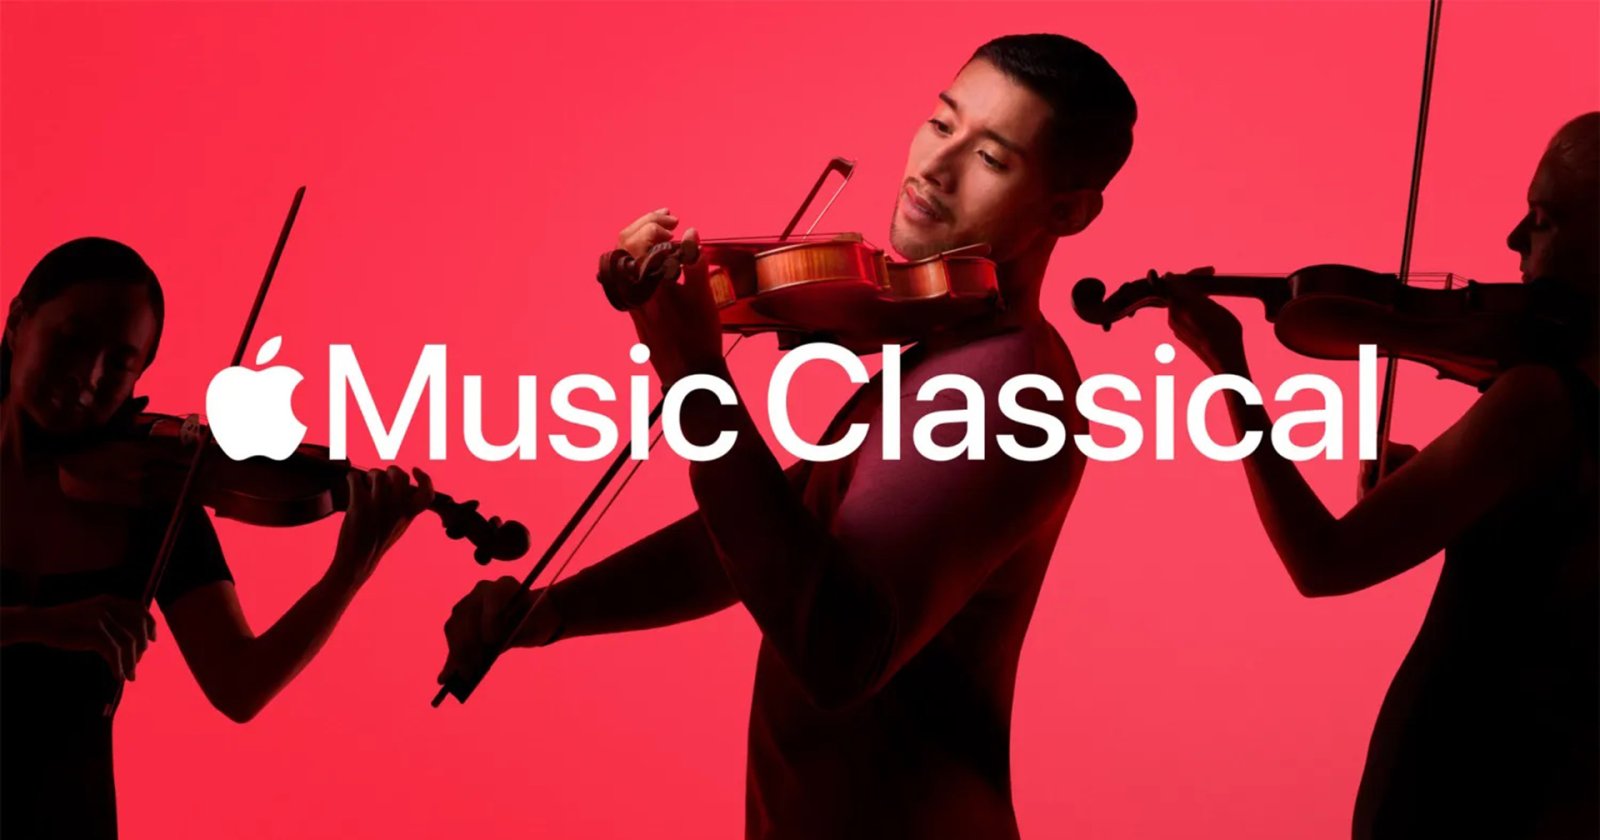 Apple ขยายบริการ Apple Music Classical ในเอเชียอีก 6 ประเทศ รวมถึง ญี่ปุ่น และจีน ด้วย